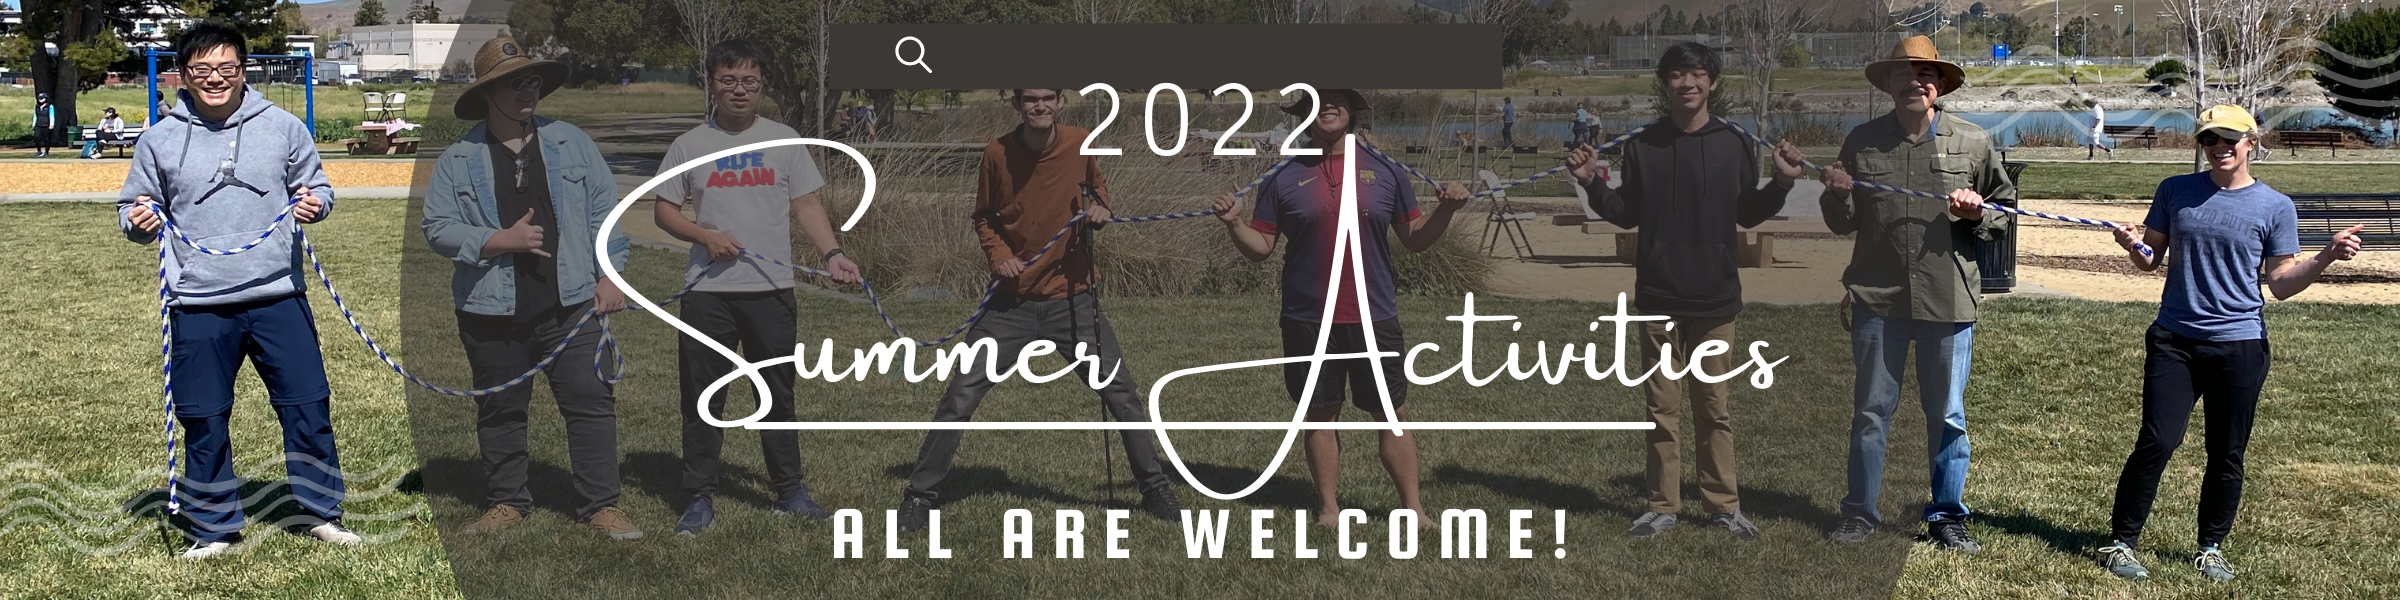 Summer 2022 Banner